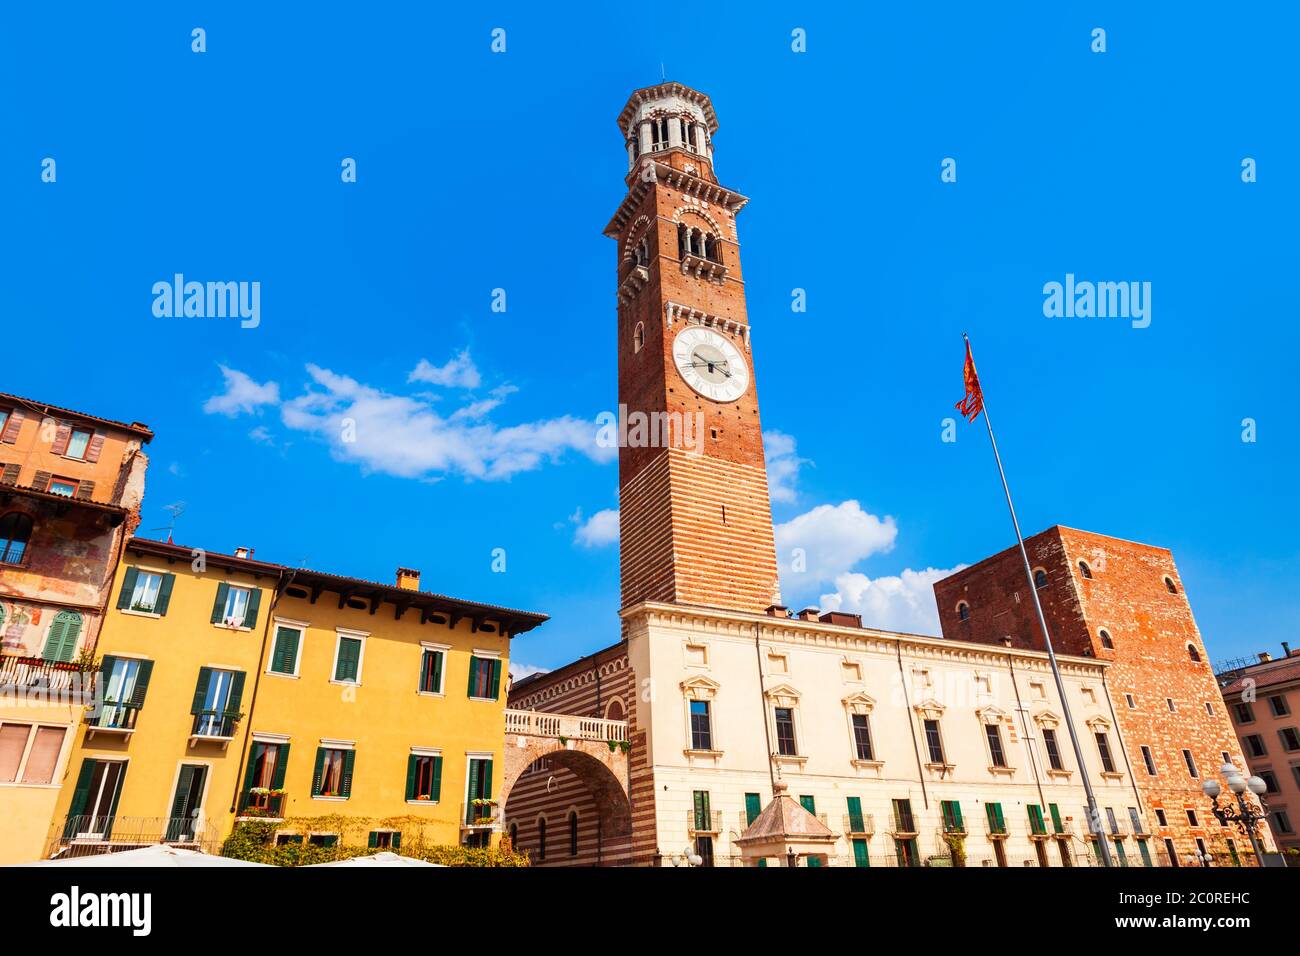 Torre dei Lamberti is tower in Piazza delle Erbe square in Verona, Veneto region in Italy. Stock Photo